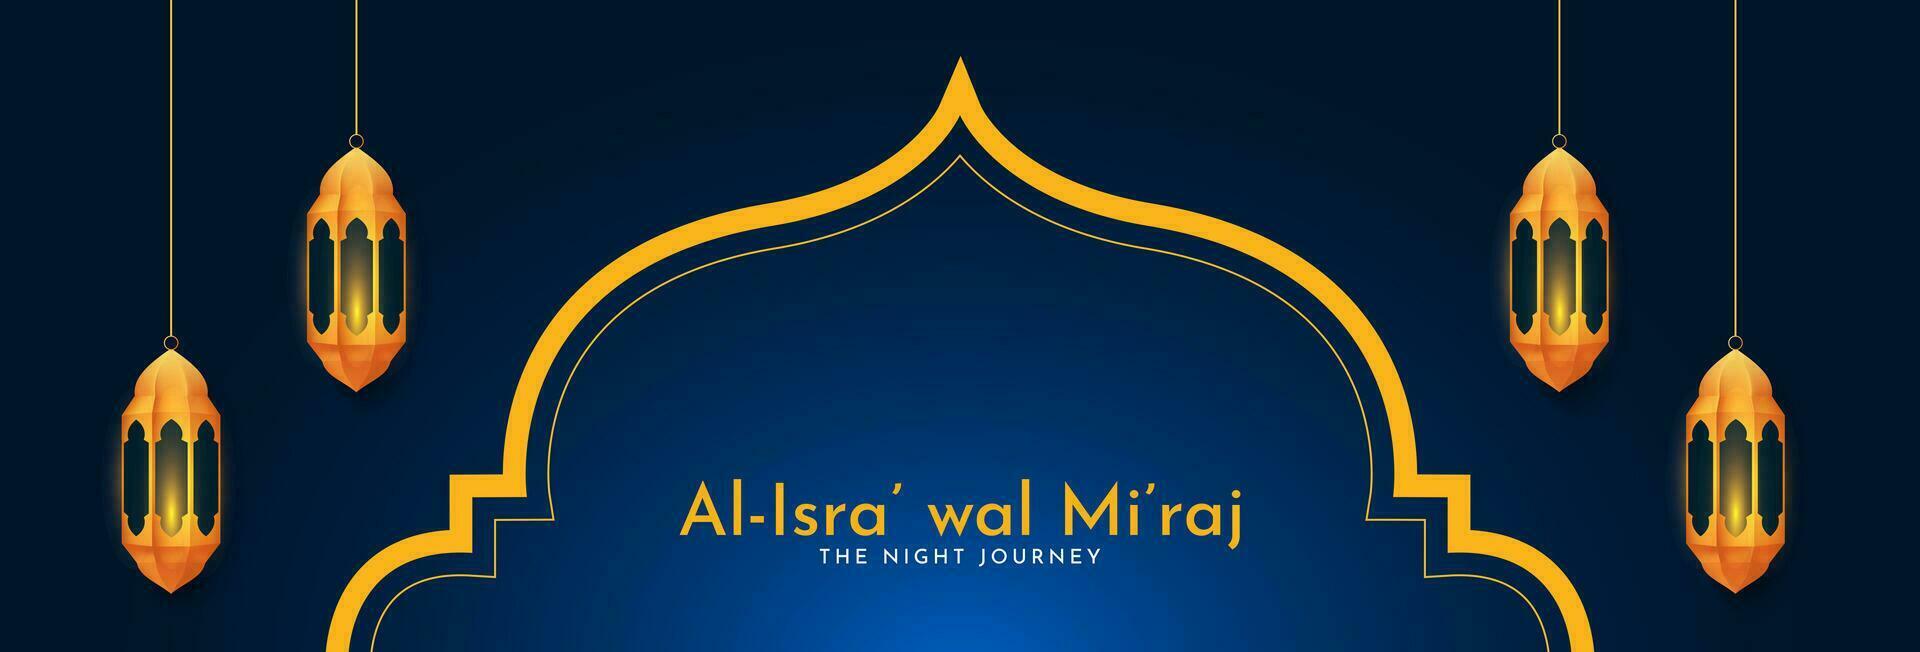 al-isra' wal mi'raj notte viaggio di il profeta Maometto. islamico sfondo design. striscione, manifesto, carta modello. vettore illustrazione